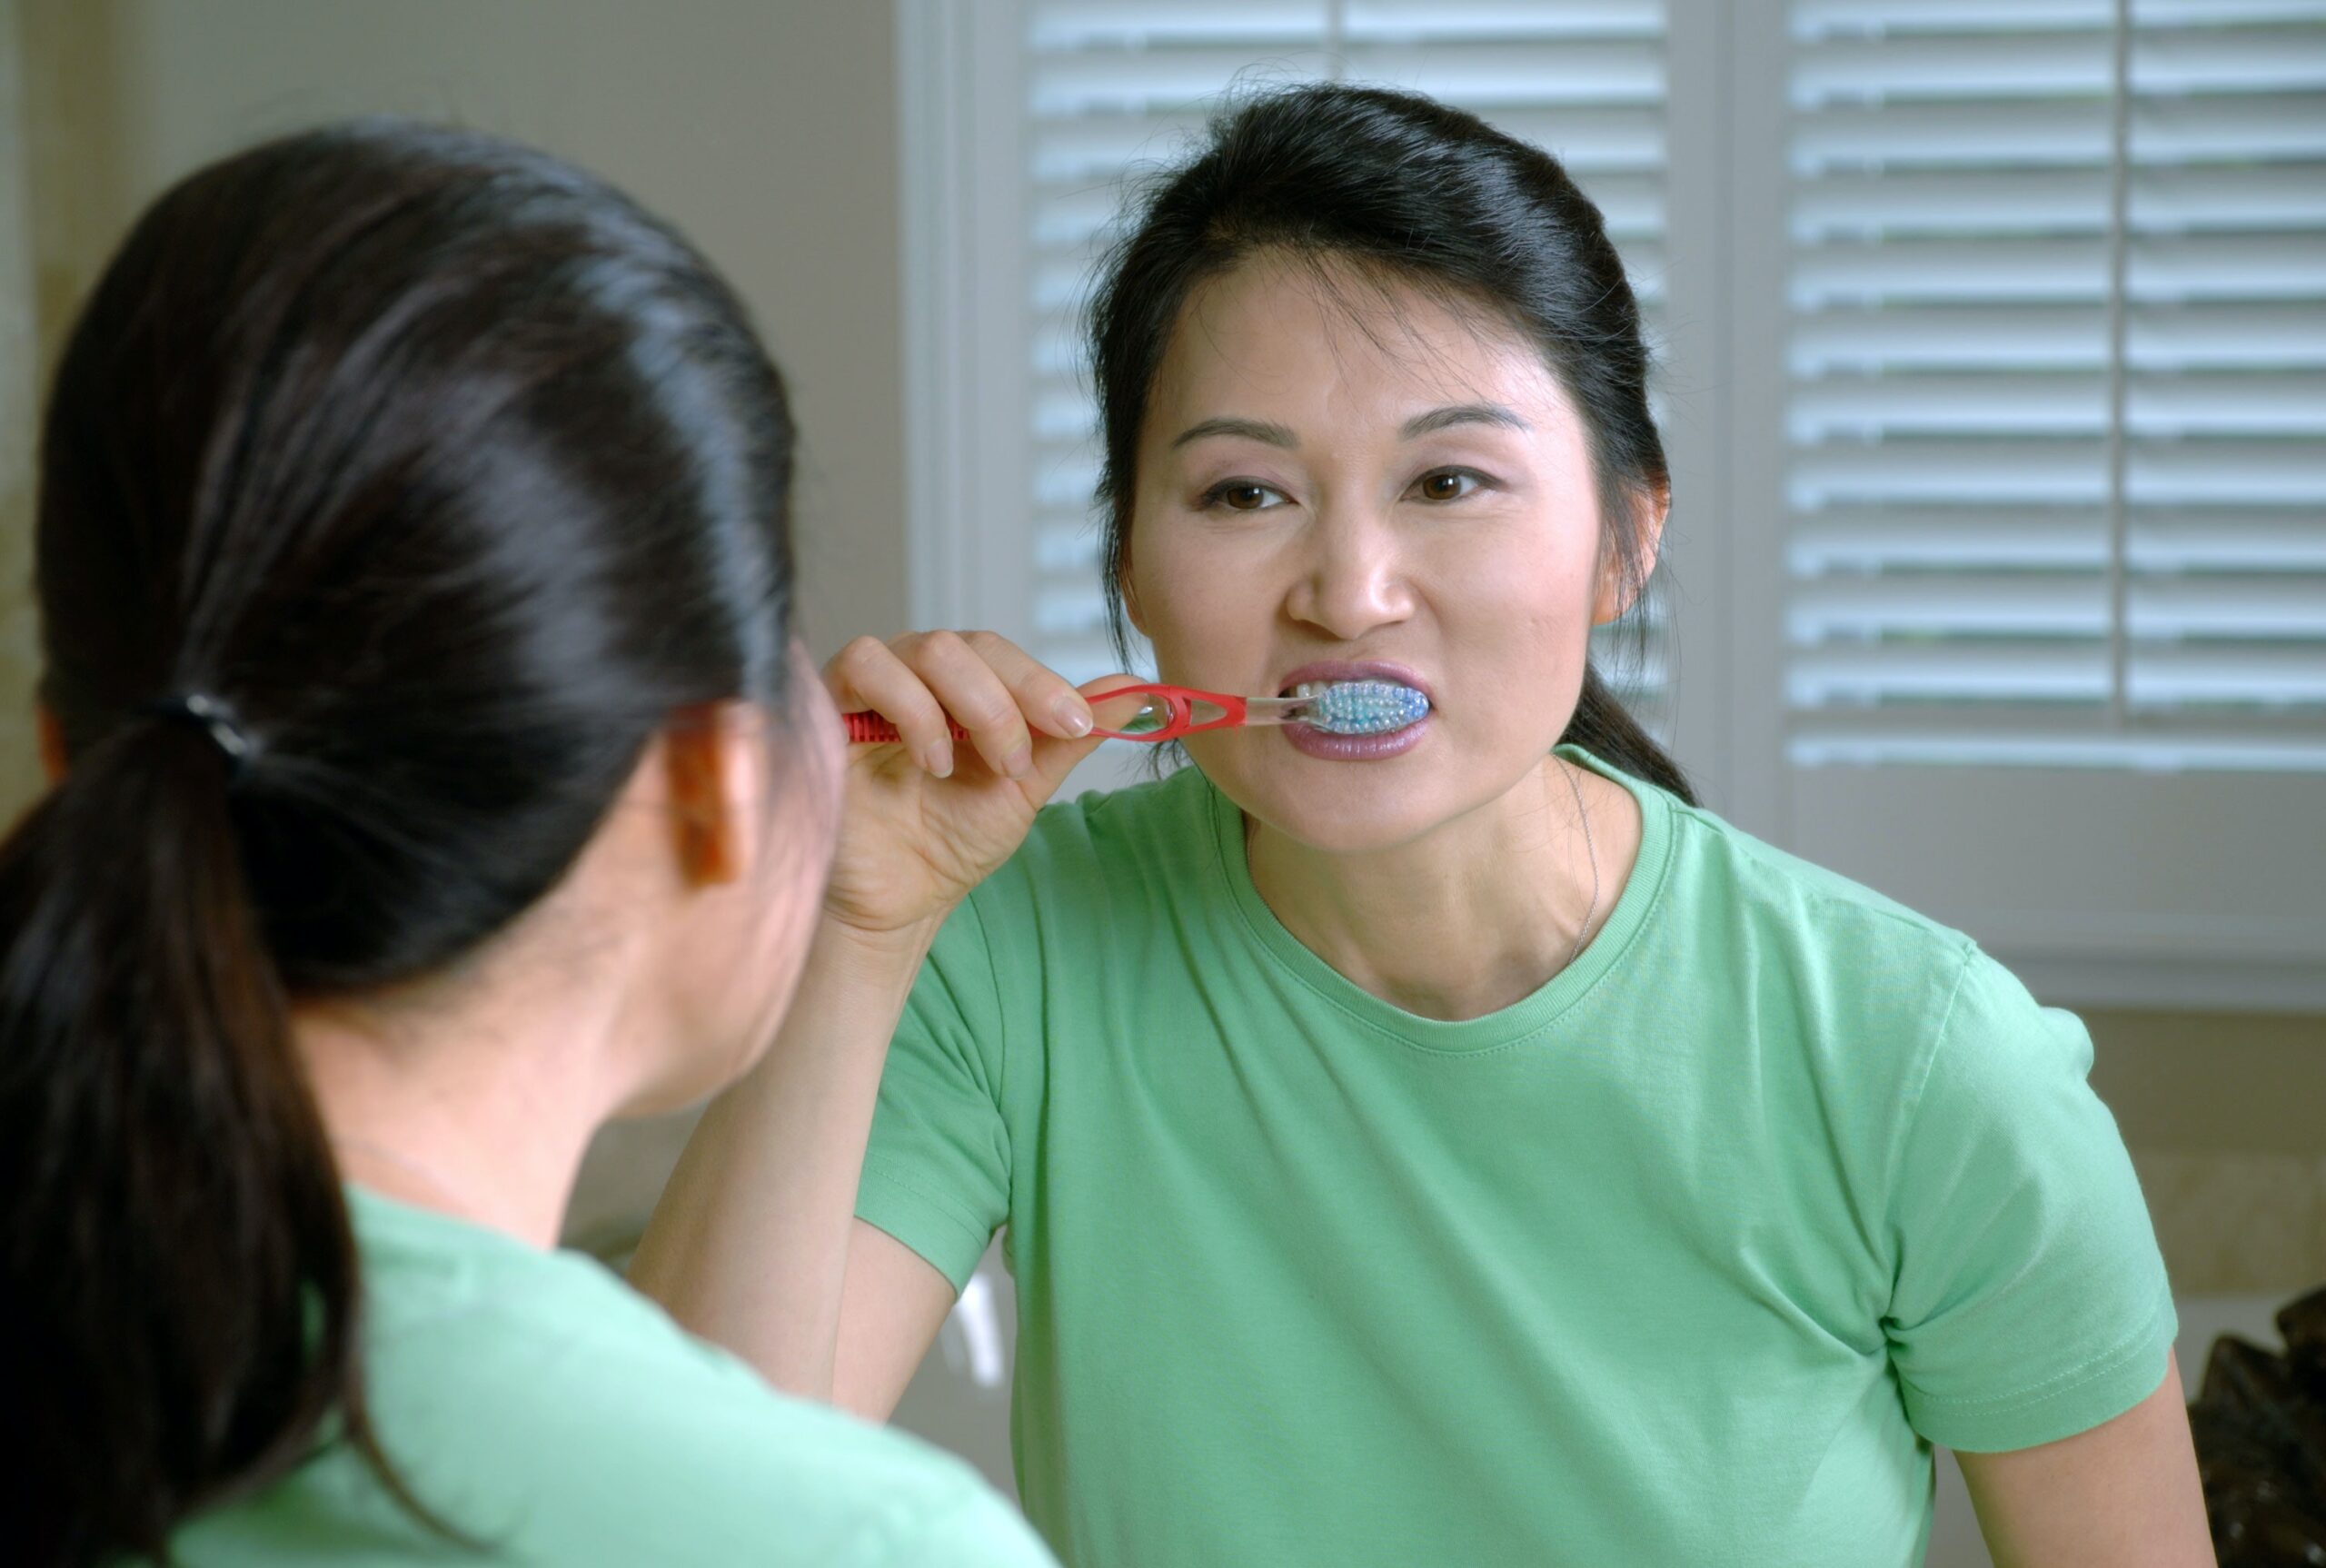 brushing teeth is healthy